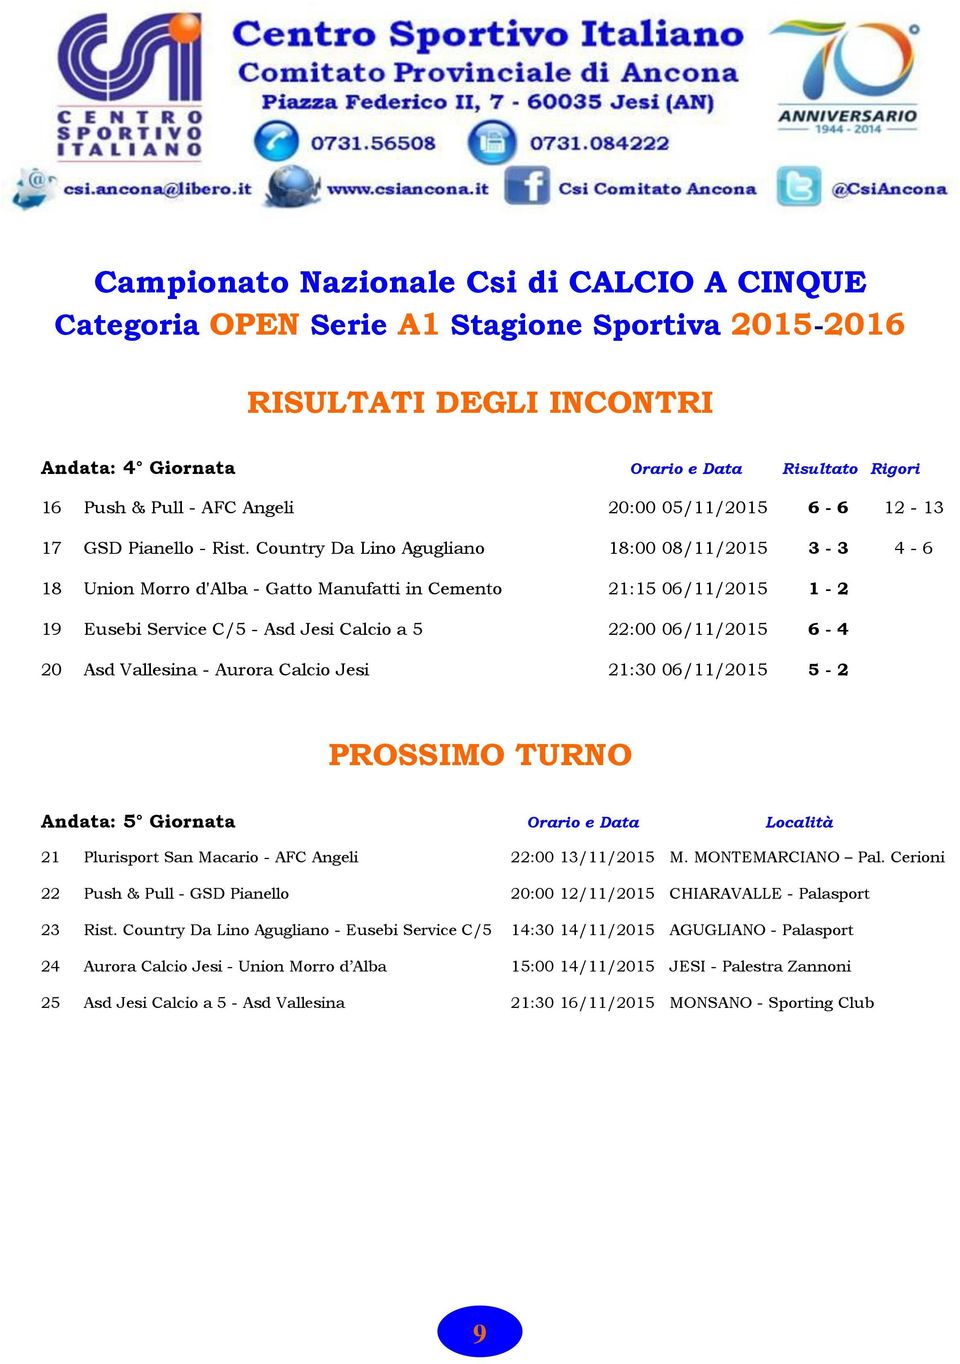 Country Da Lino Agugliano 18:00 08/11/2015 3-3 4-6 18 Union Morro d'alba - Gatto Manufatti in Cemento 21:15 06/11/2015 1-2 19 Eusebi Service C/5 - Asd Jesi Calcio a 5 22:00 06/11/2015 6-4 20 Asd